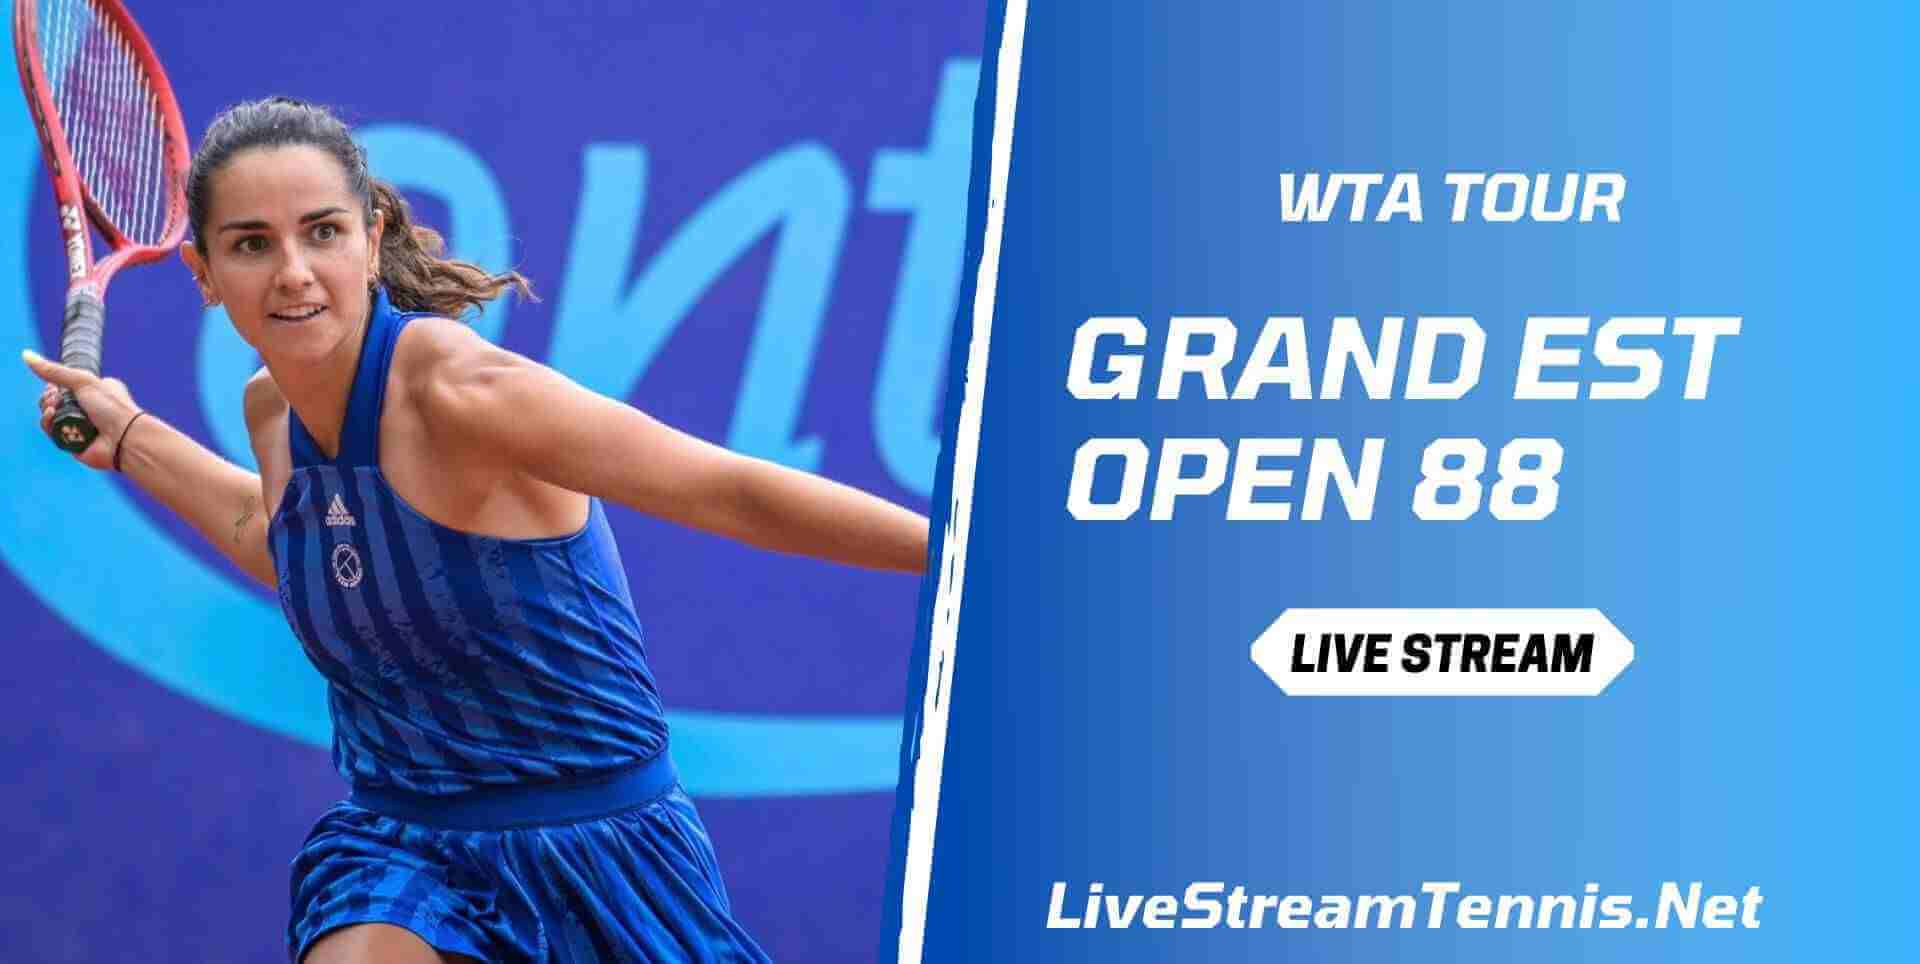 Grand Est Open 88 Live Stream WTA